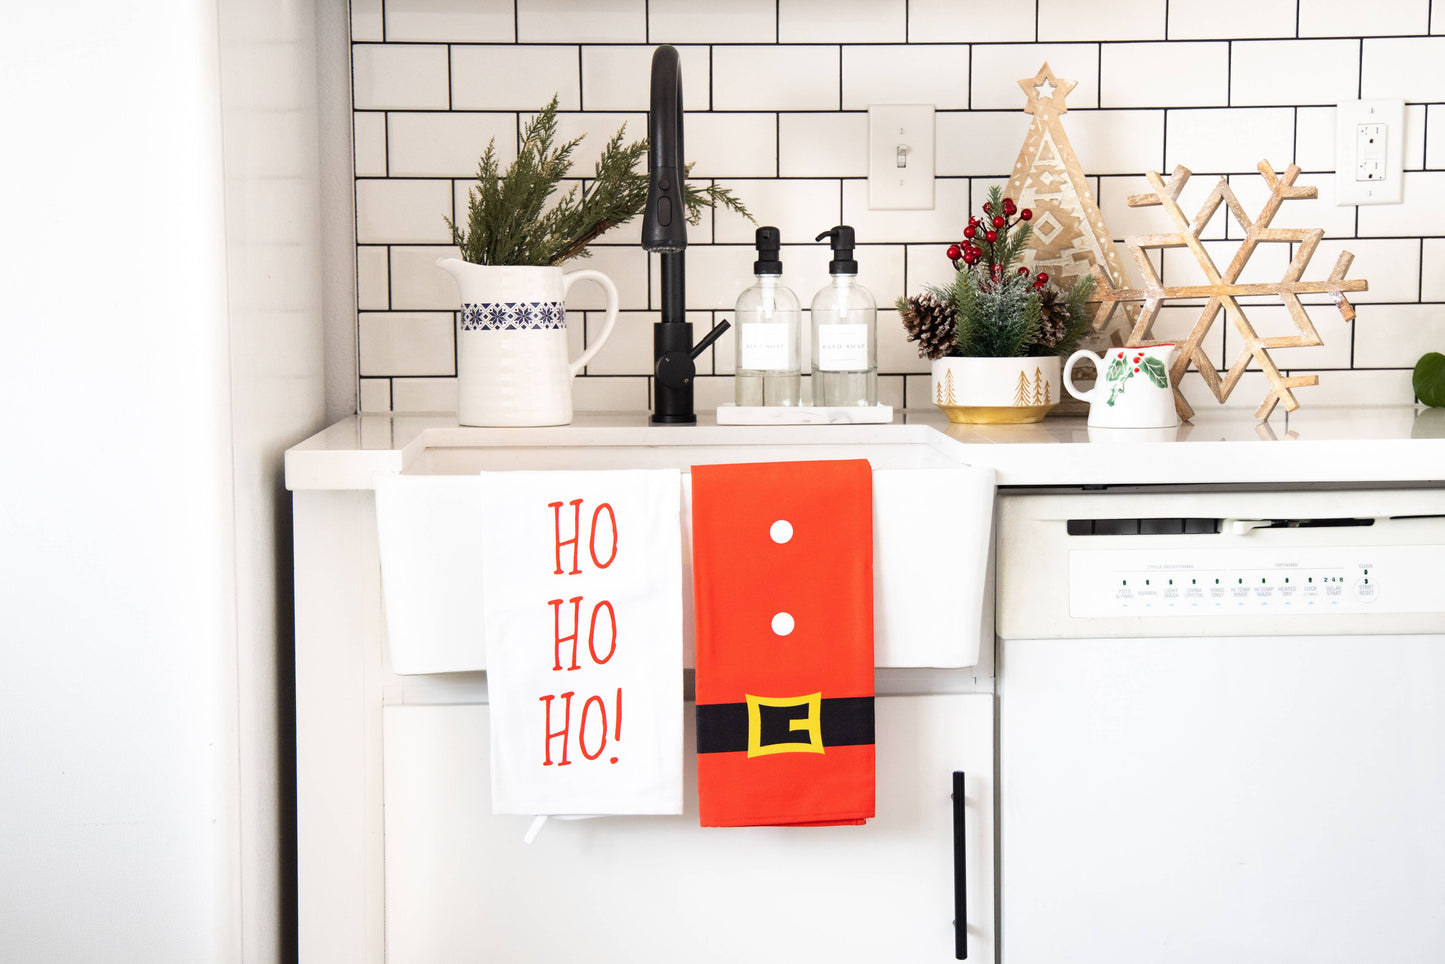 Ho Ho Ho Tea Towel Set, Kitchen Christmas Decor